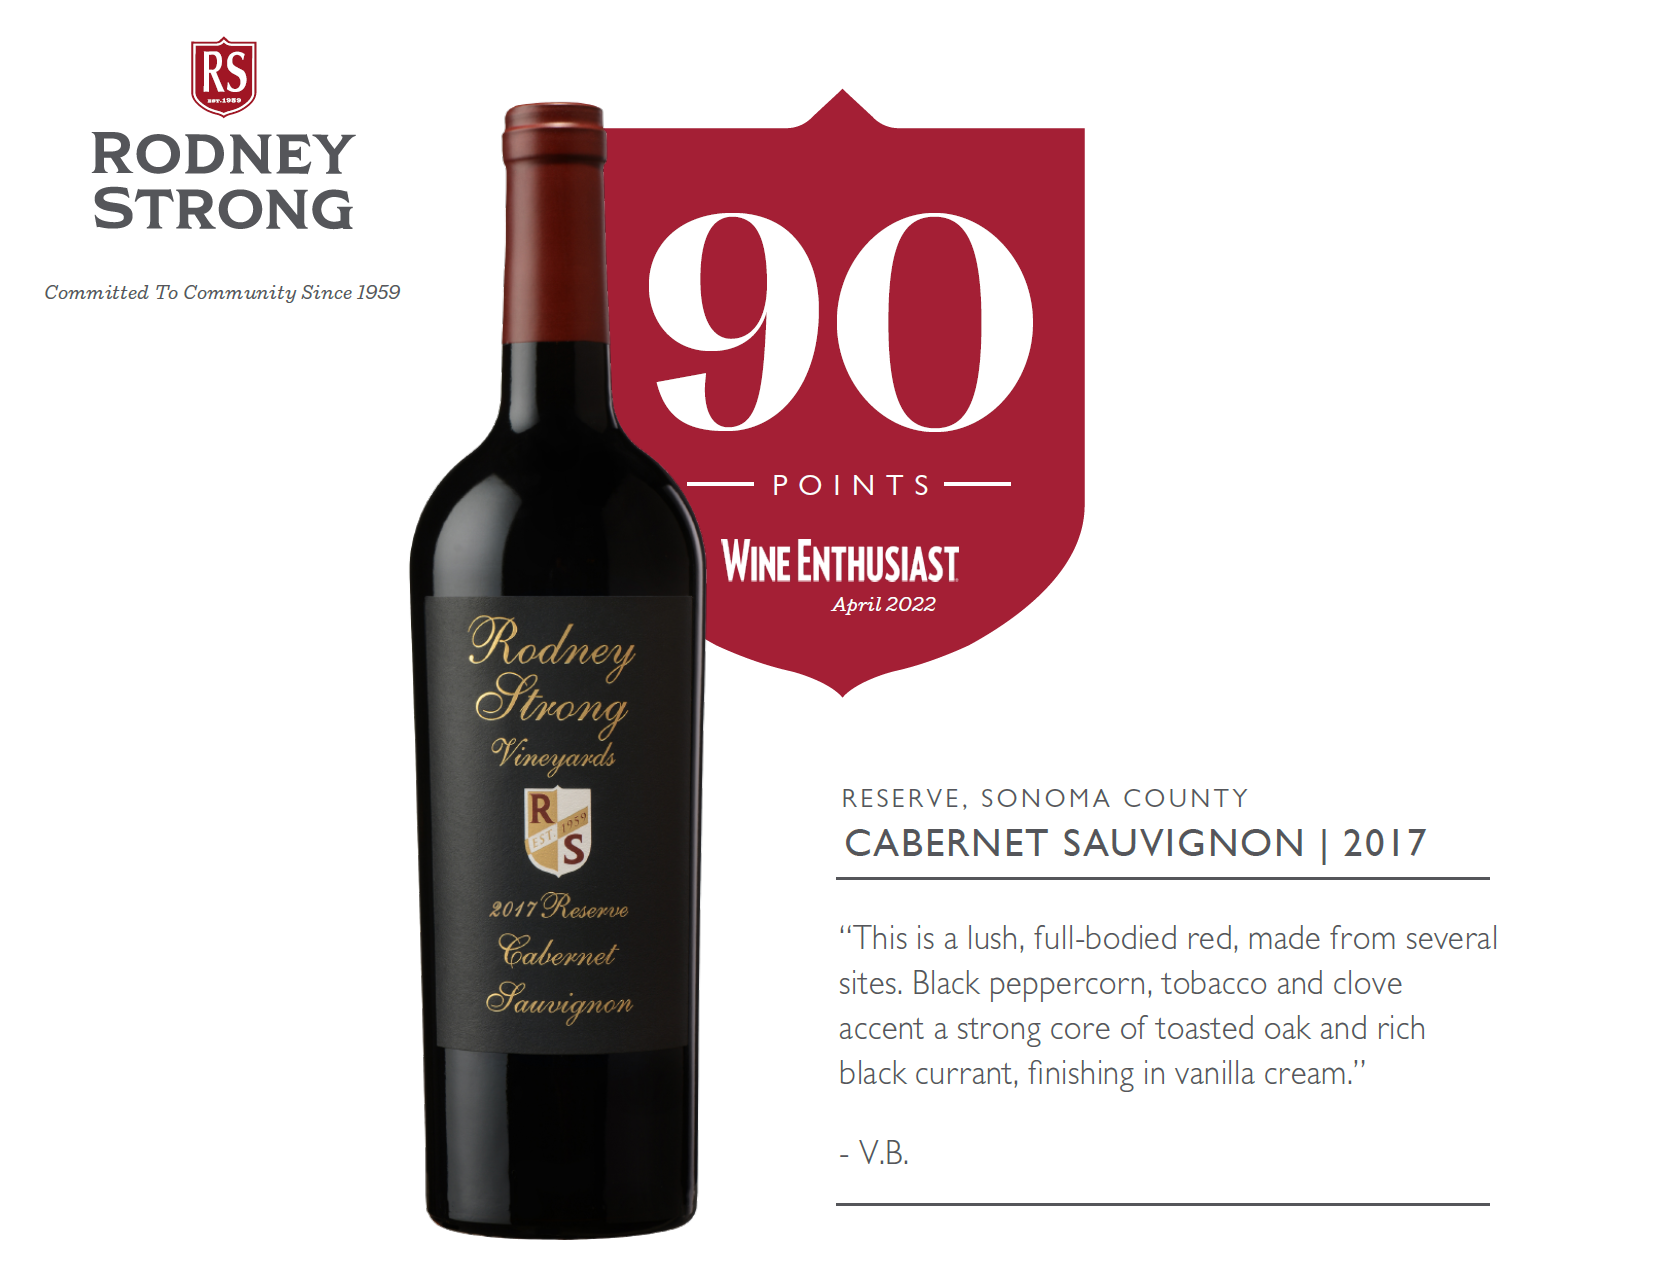 2017 Reserve Cabernet Sauvignon 90 points Wine Enthusiast